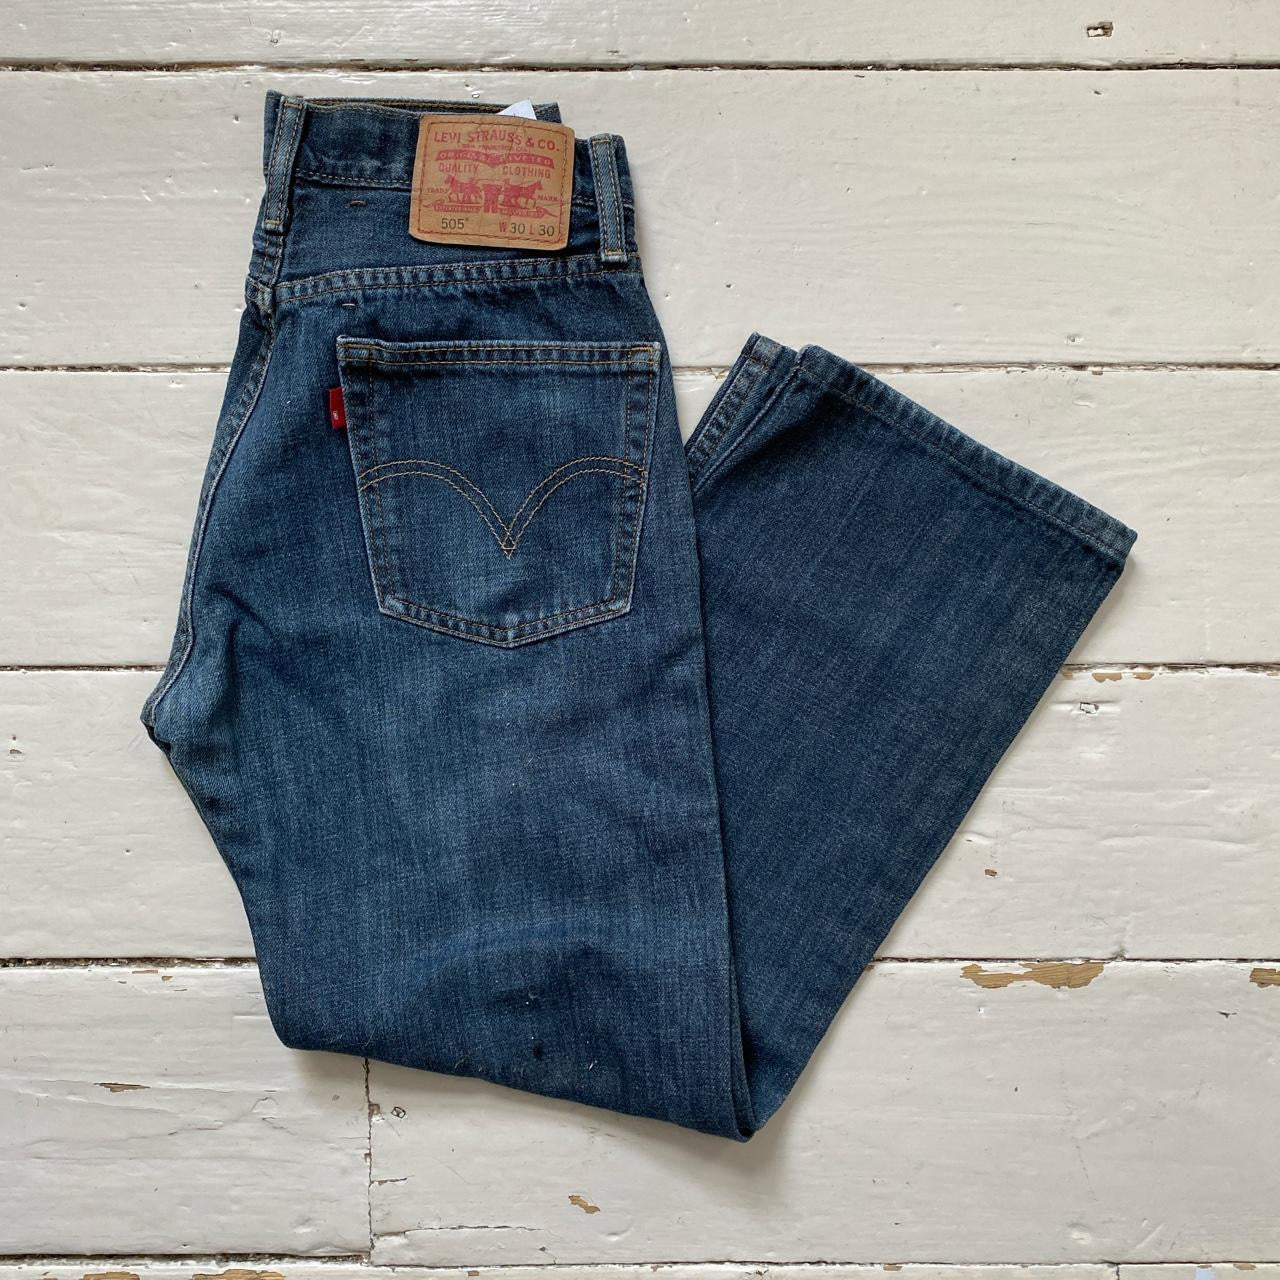 Levis 505 Blue Jeans (30/25)